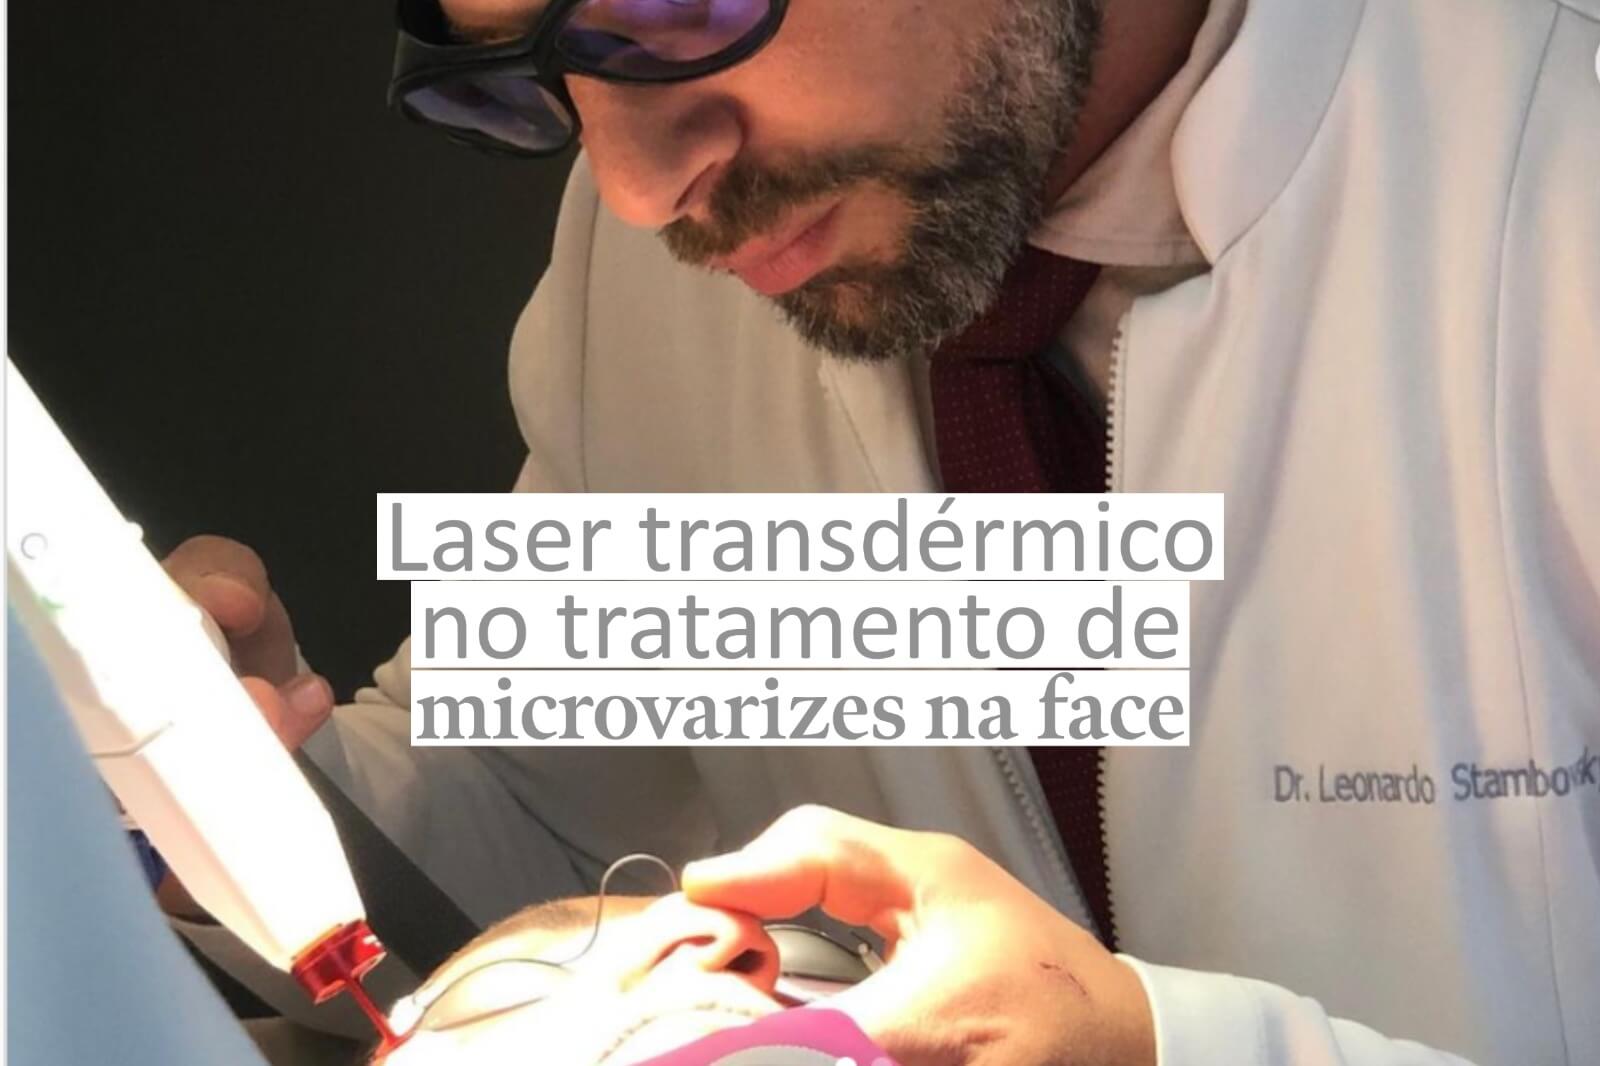 Laser transdérmico no tratamento de microvarizes na face